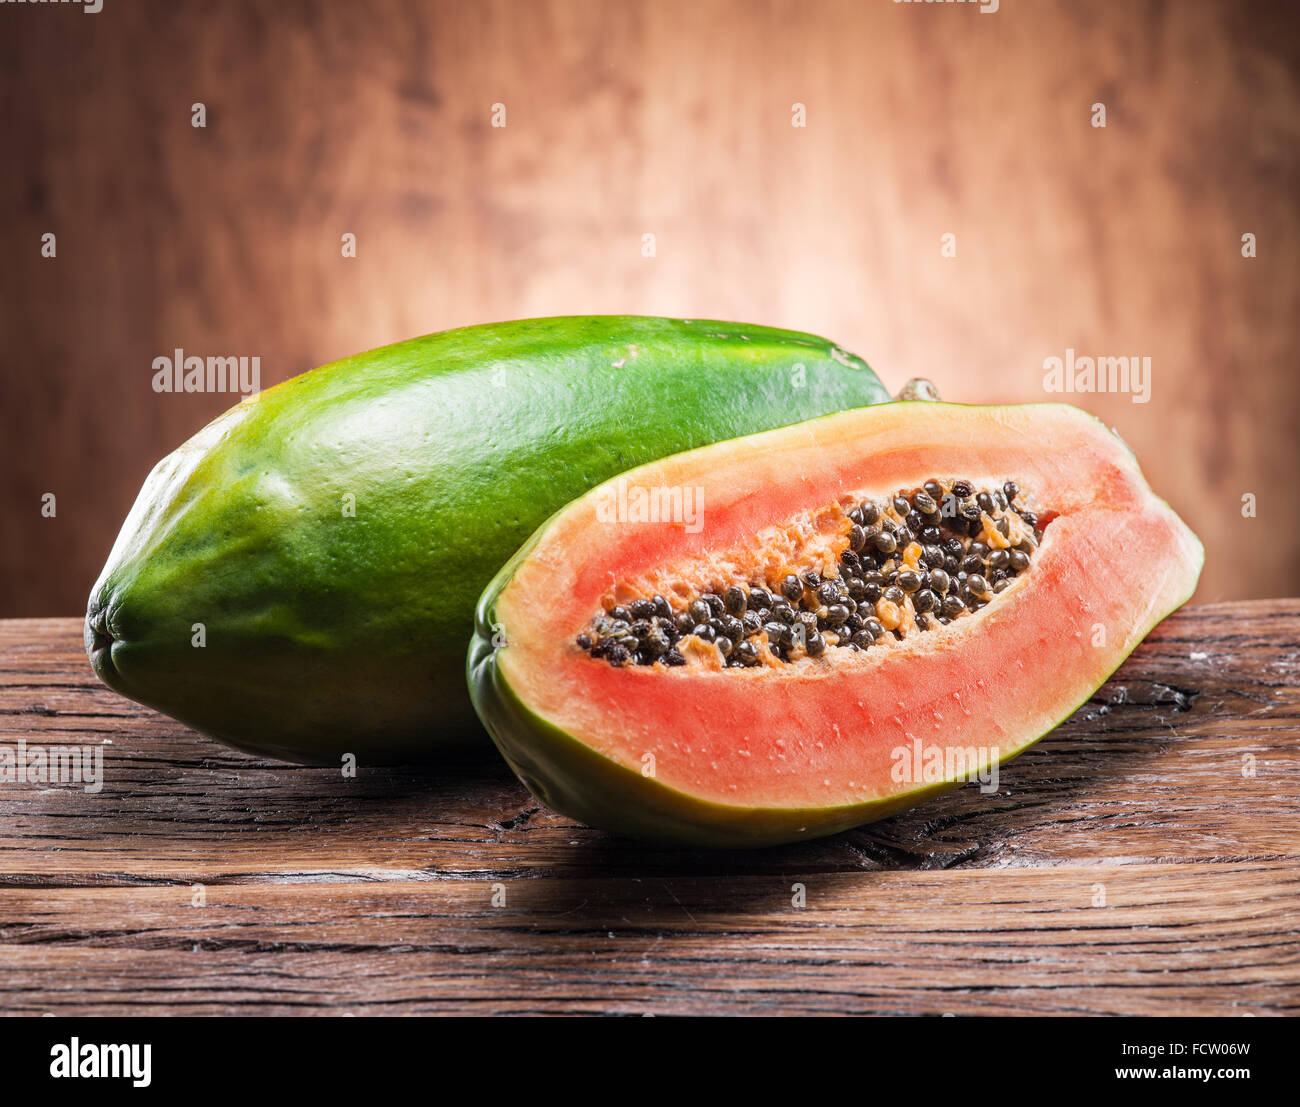 Papaya fruit on wooden background. Stock Photo